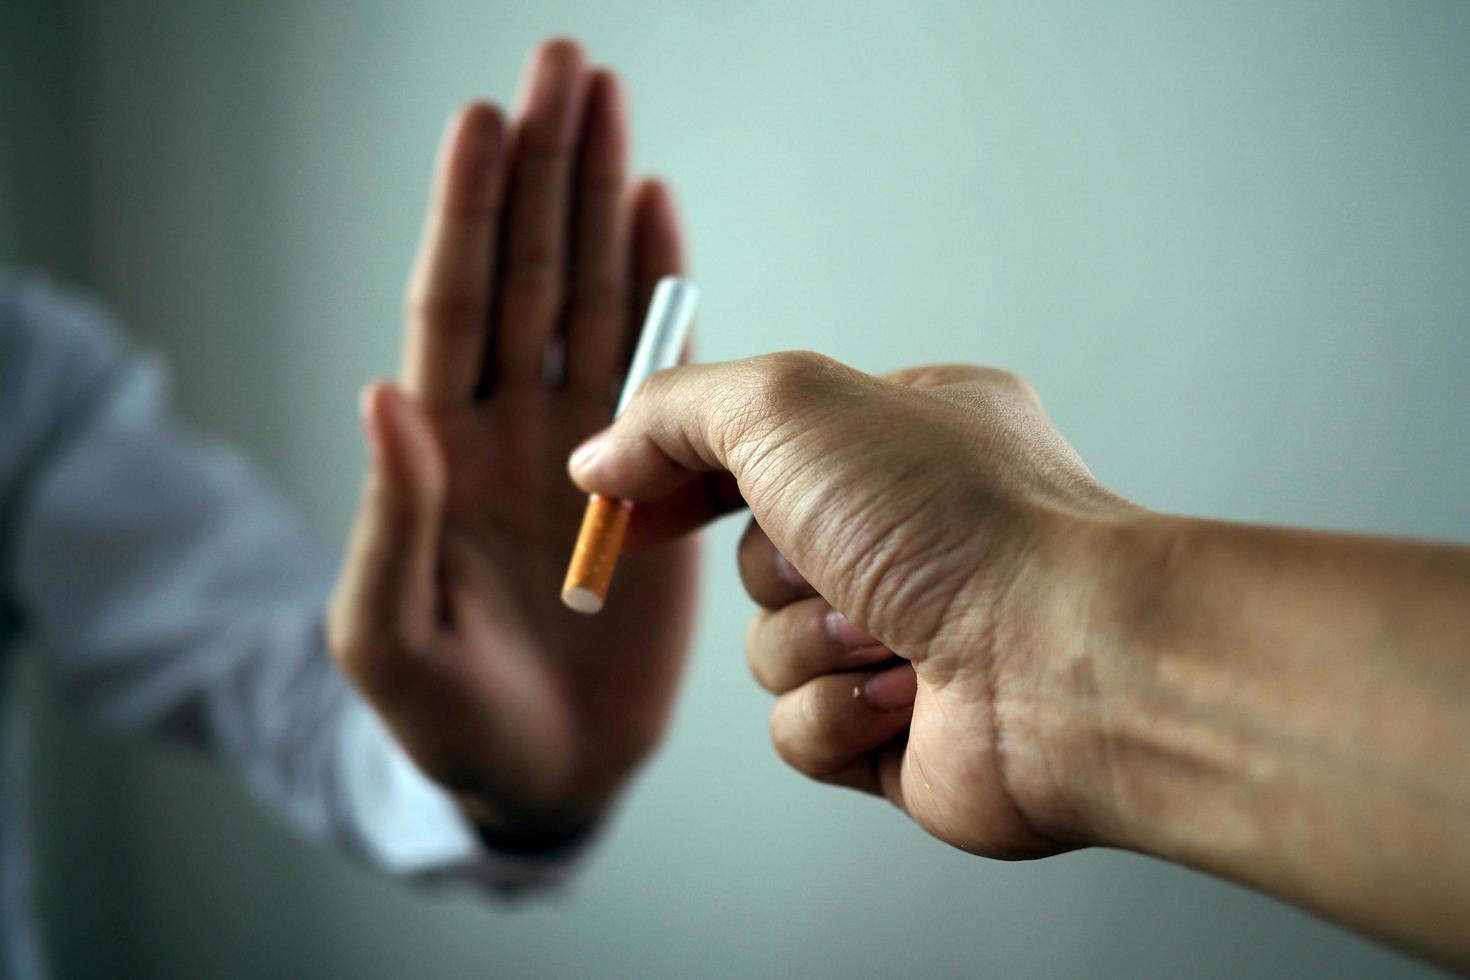 a mão rejeitou o cigarro que lhe foi entregue. conceitos de fumar causas de câncer de pulmão. apenas diga não foto